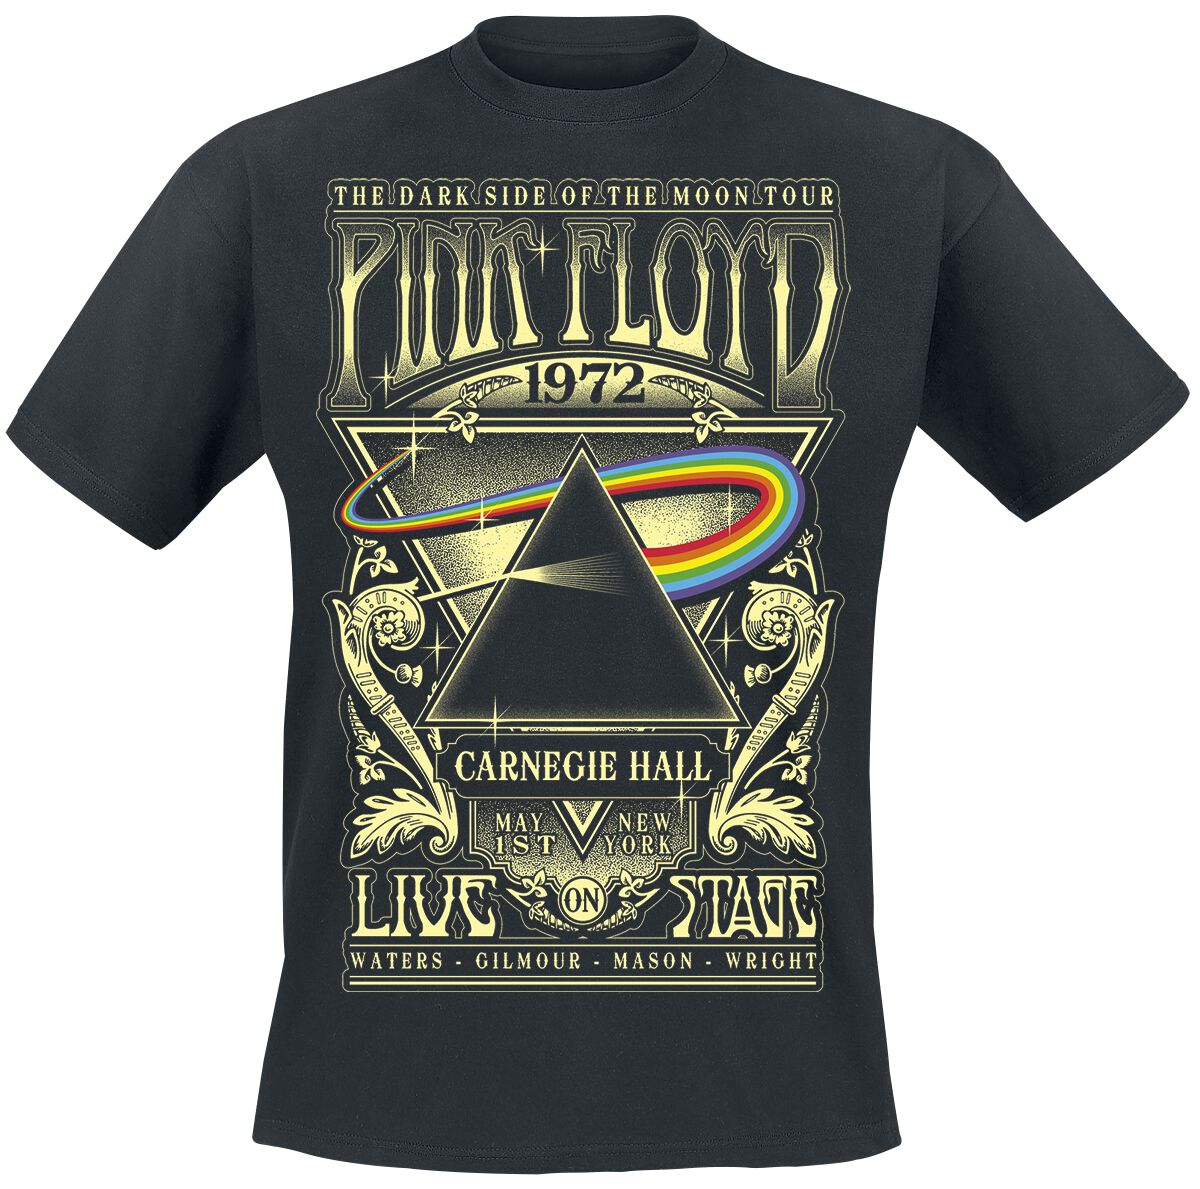 Pink Floyd T-Shirt - The Dark Side Of The Moon - Live On Stage 1972 - S bis 5XL - für Männer - Größe 5XL - schwarz  - Lizenziertes Merchandise!